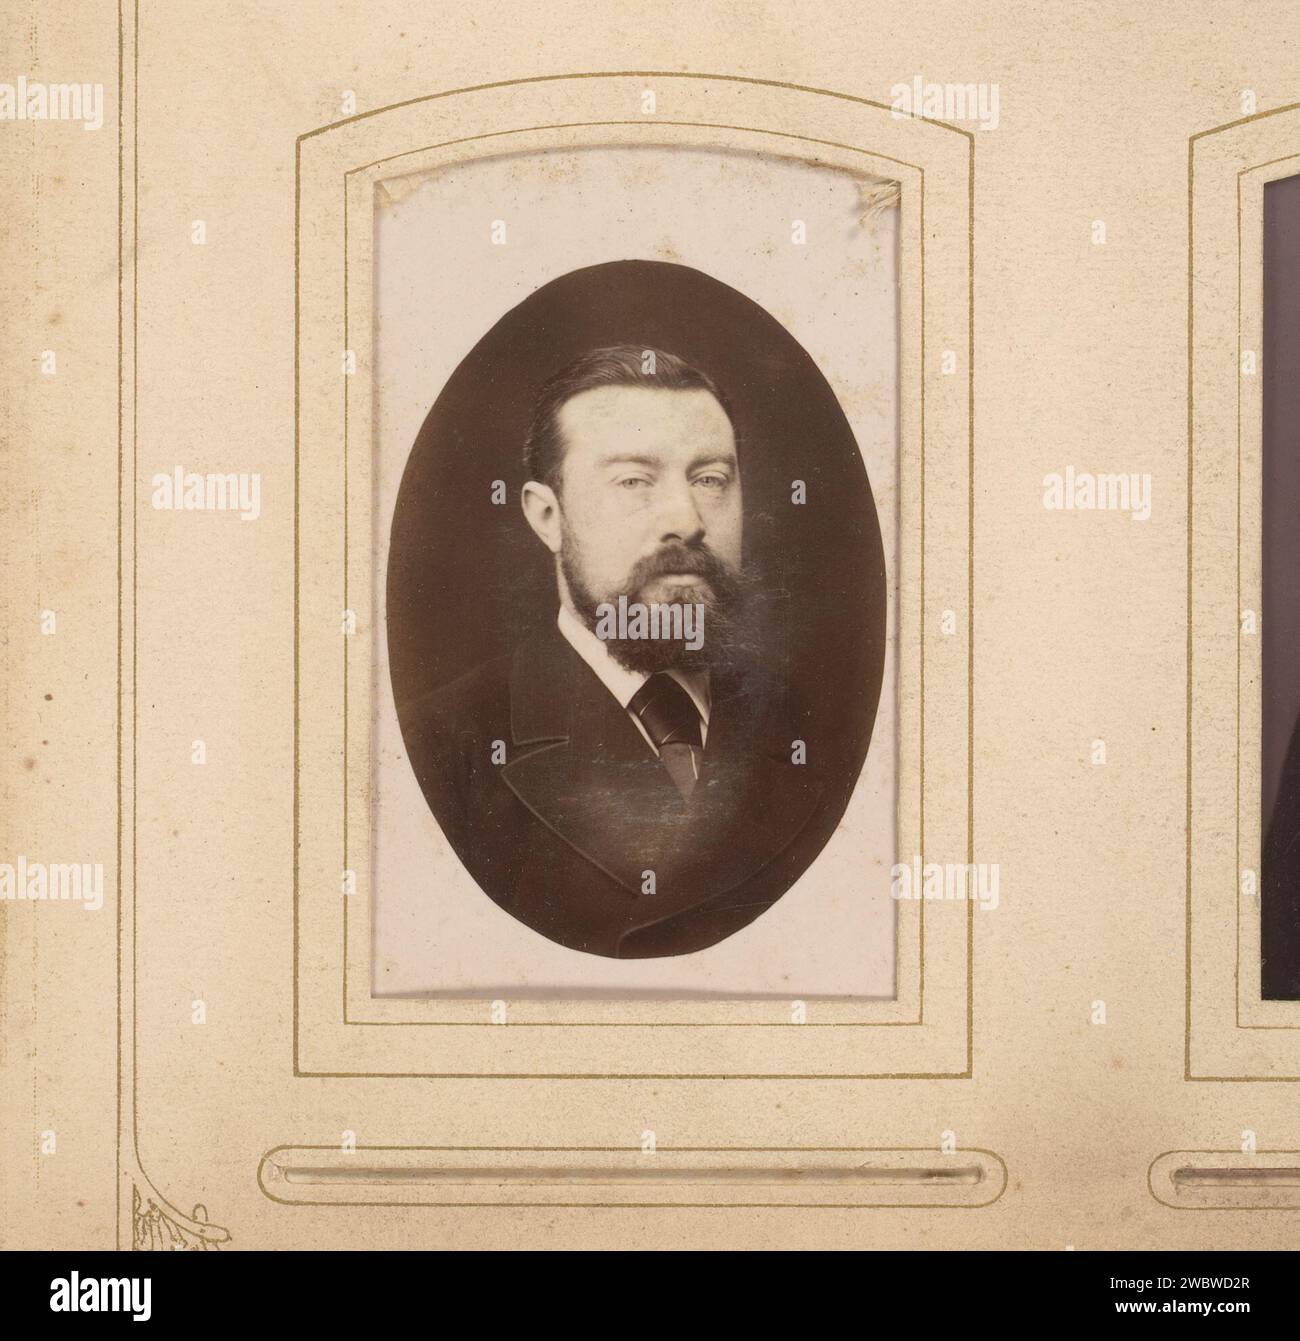 Porträt eines Mannes, P. Weijnen & Fils, 1854 - 1865 Fotografie. Visitenkarte dieses Foto ist Teil eines Albums. Maastricht-Karton. Unterstützung für Fotos. Zelluloidalbumen-Druck historischer Personen Stockfoto